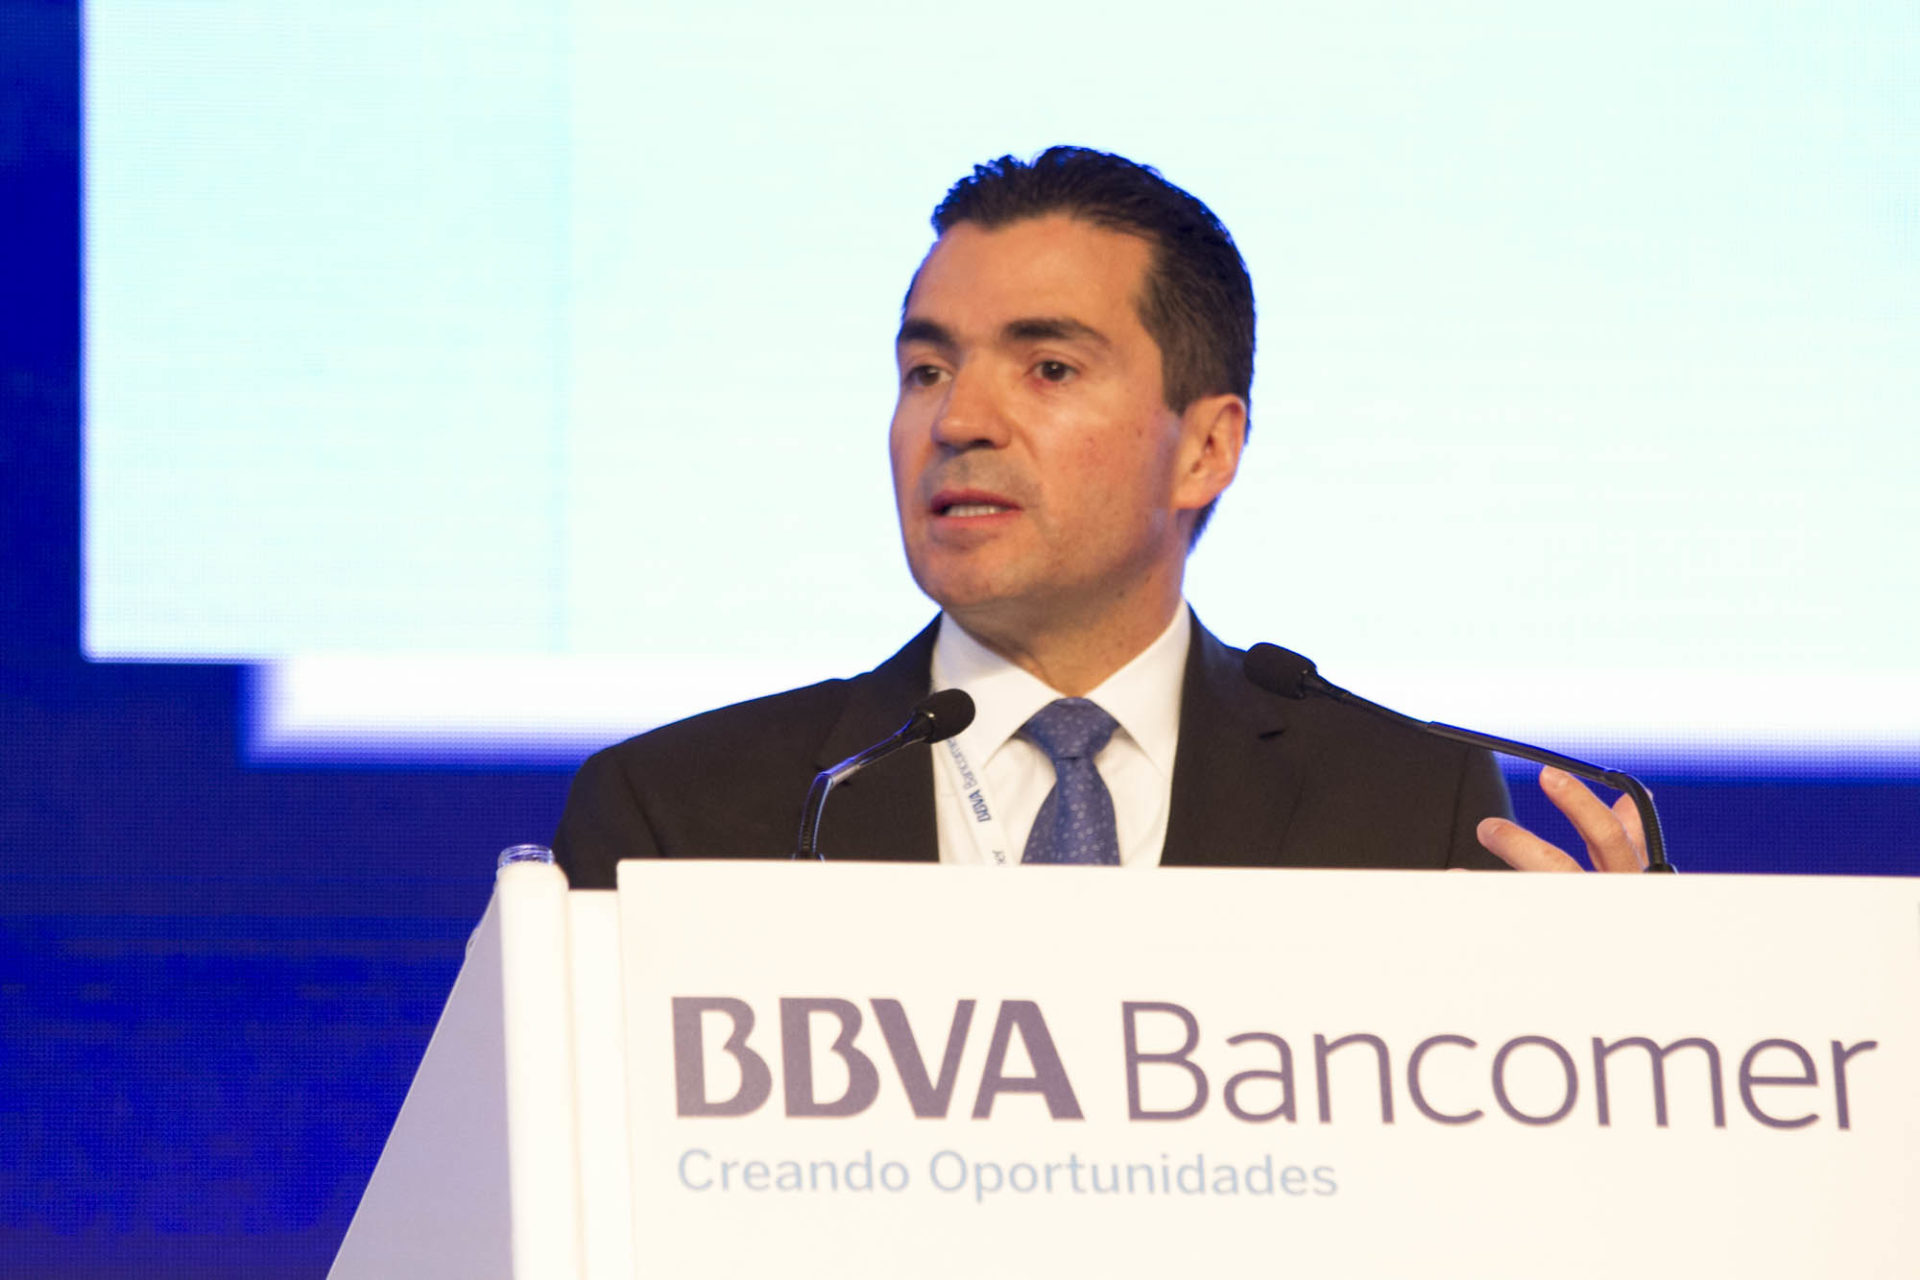 BBVA_Eduardo Osuna_country manager de BBVA Bancomer